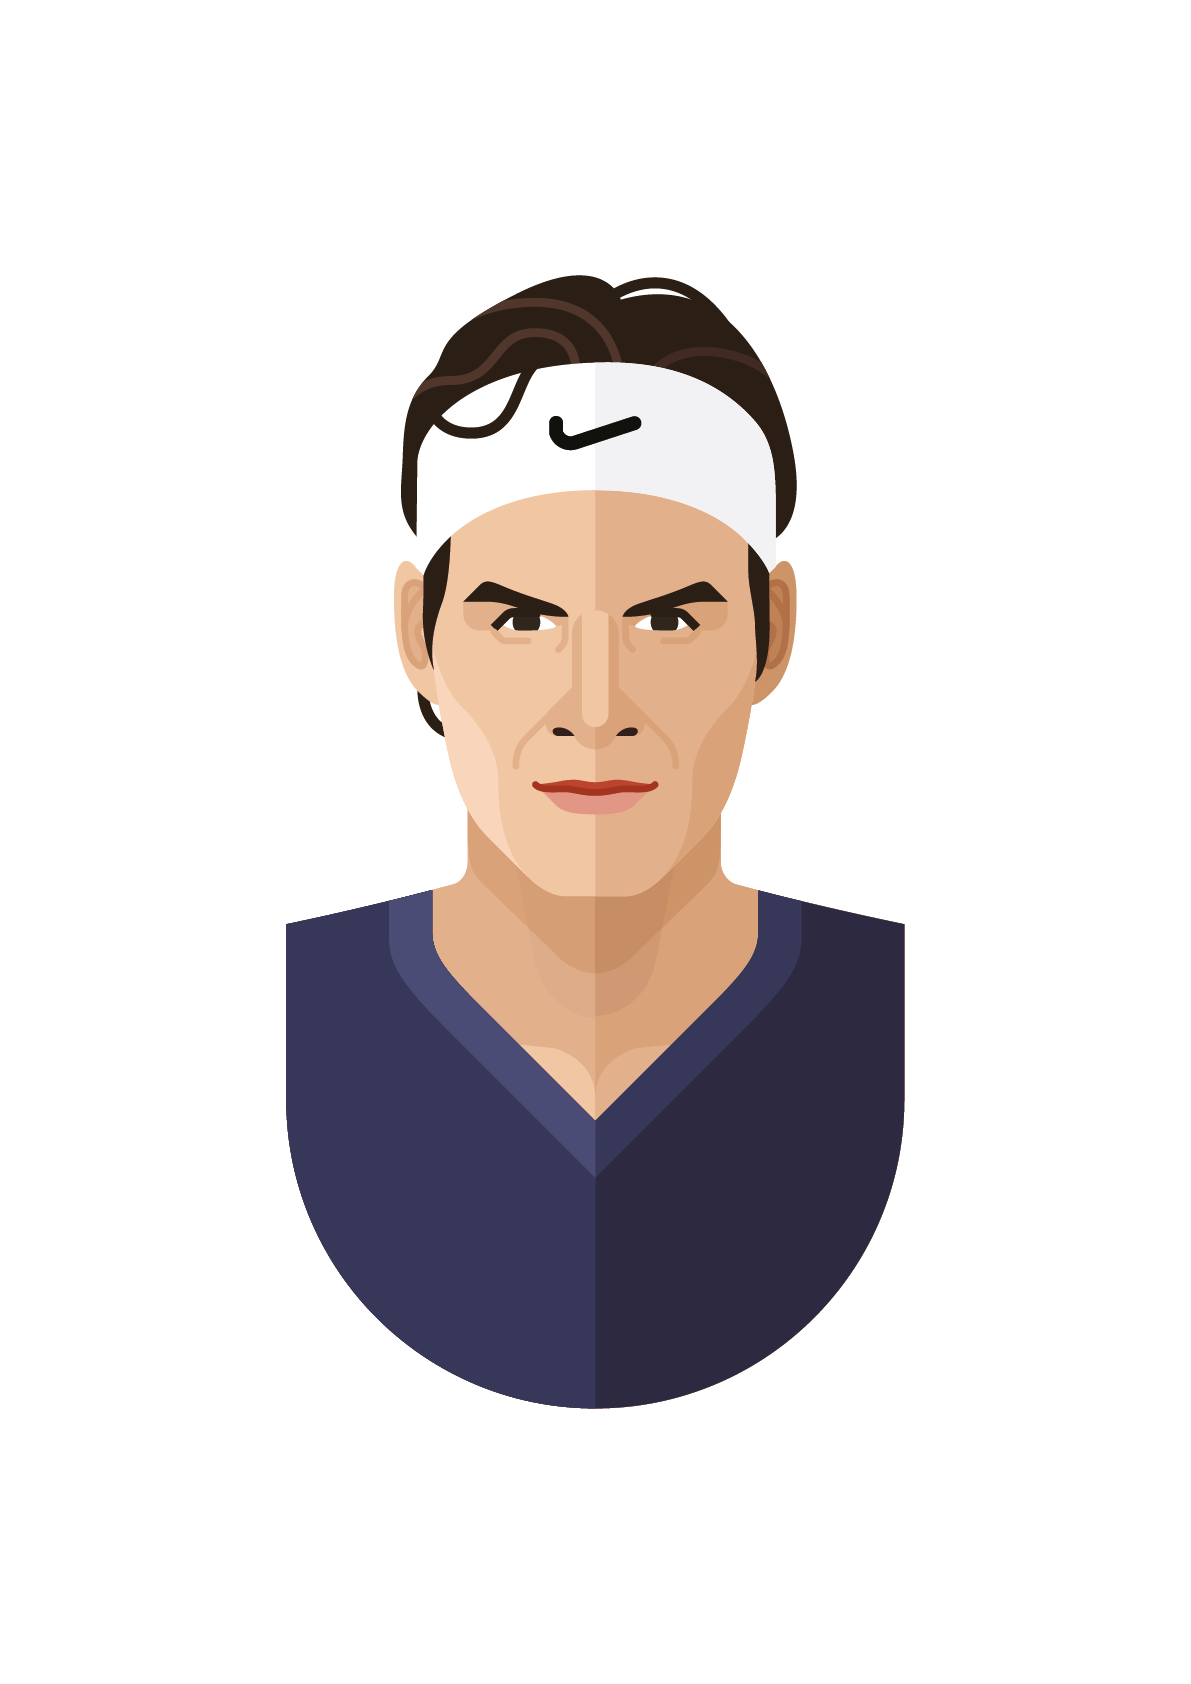 Roger Federer PNG Free Image